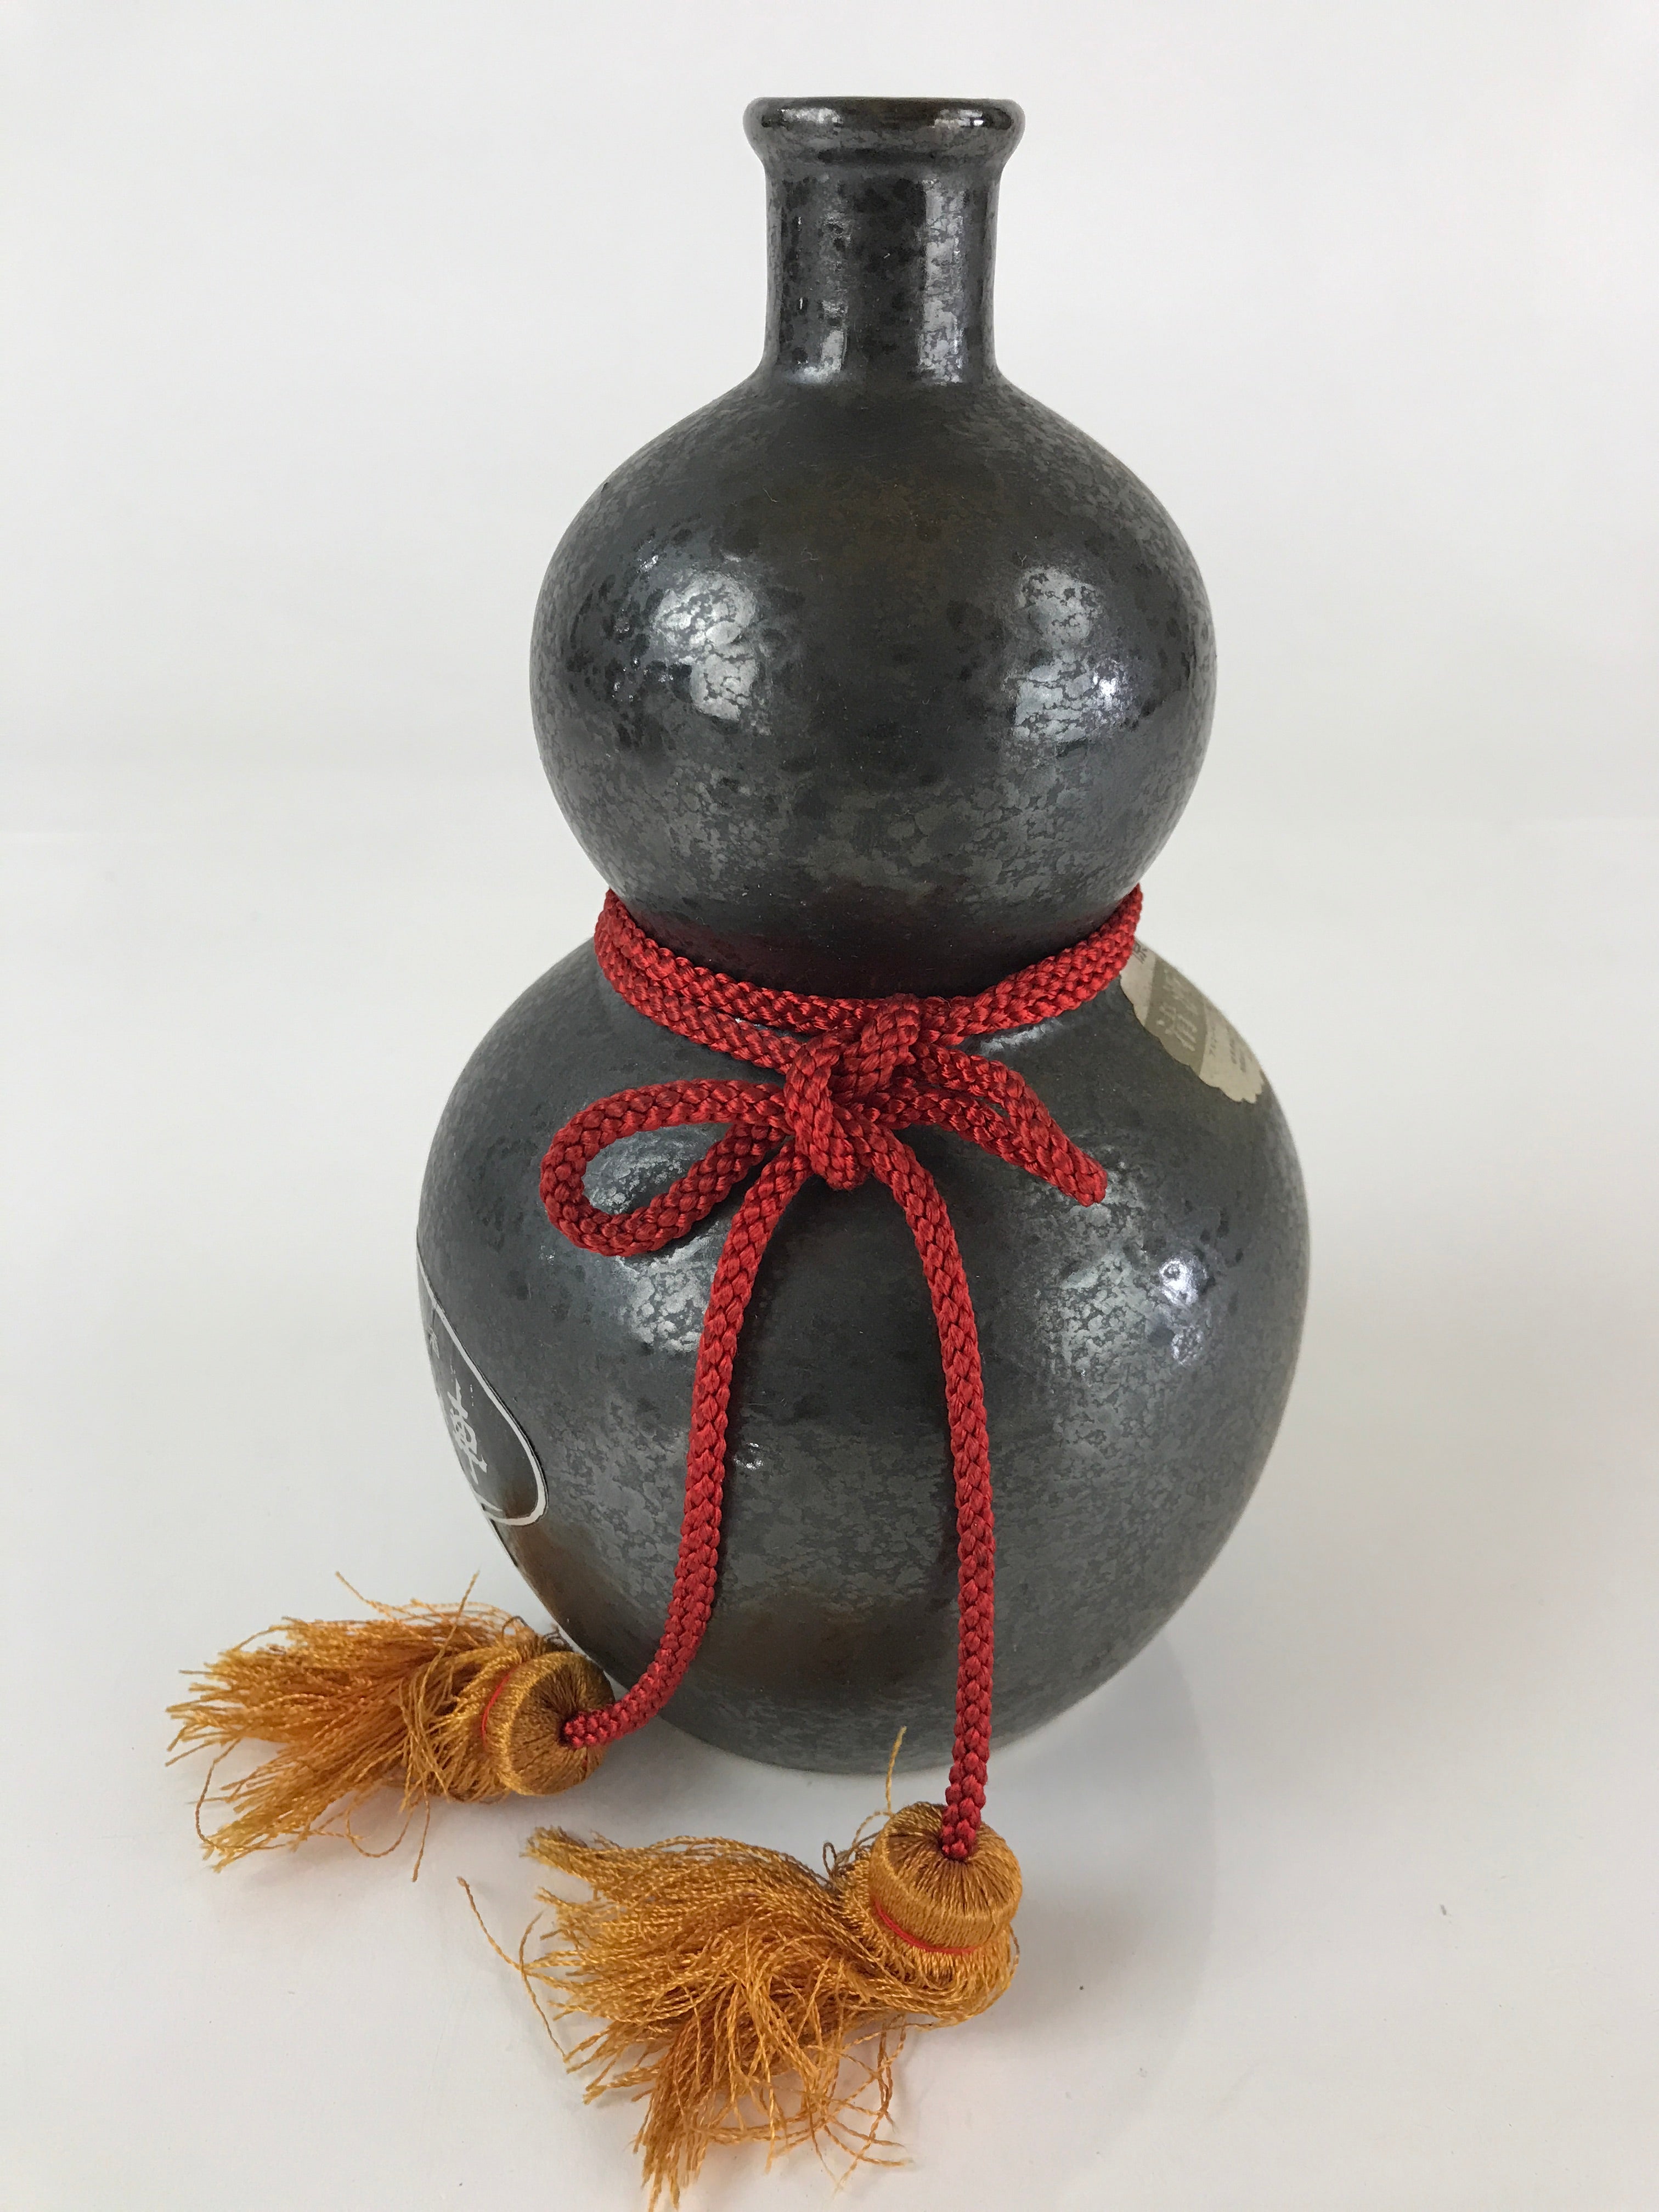 https://chidorivintage.com/cdn/shop/products/Japanese-Ceramic-Sake-Bottle-Sake-Cup-Set-Vtg-Pottery-Gourd-Hyotan-TS461-5.jpg?v=1665515701